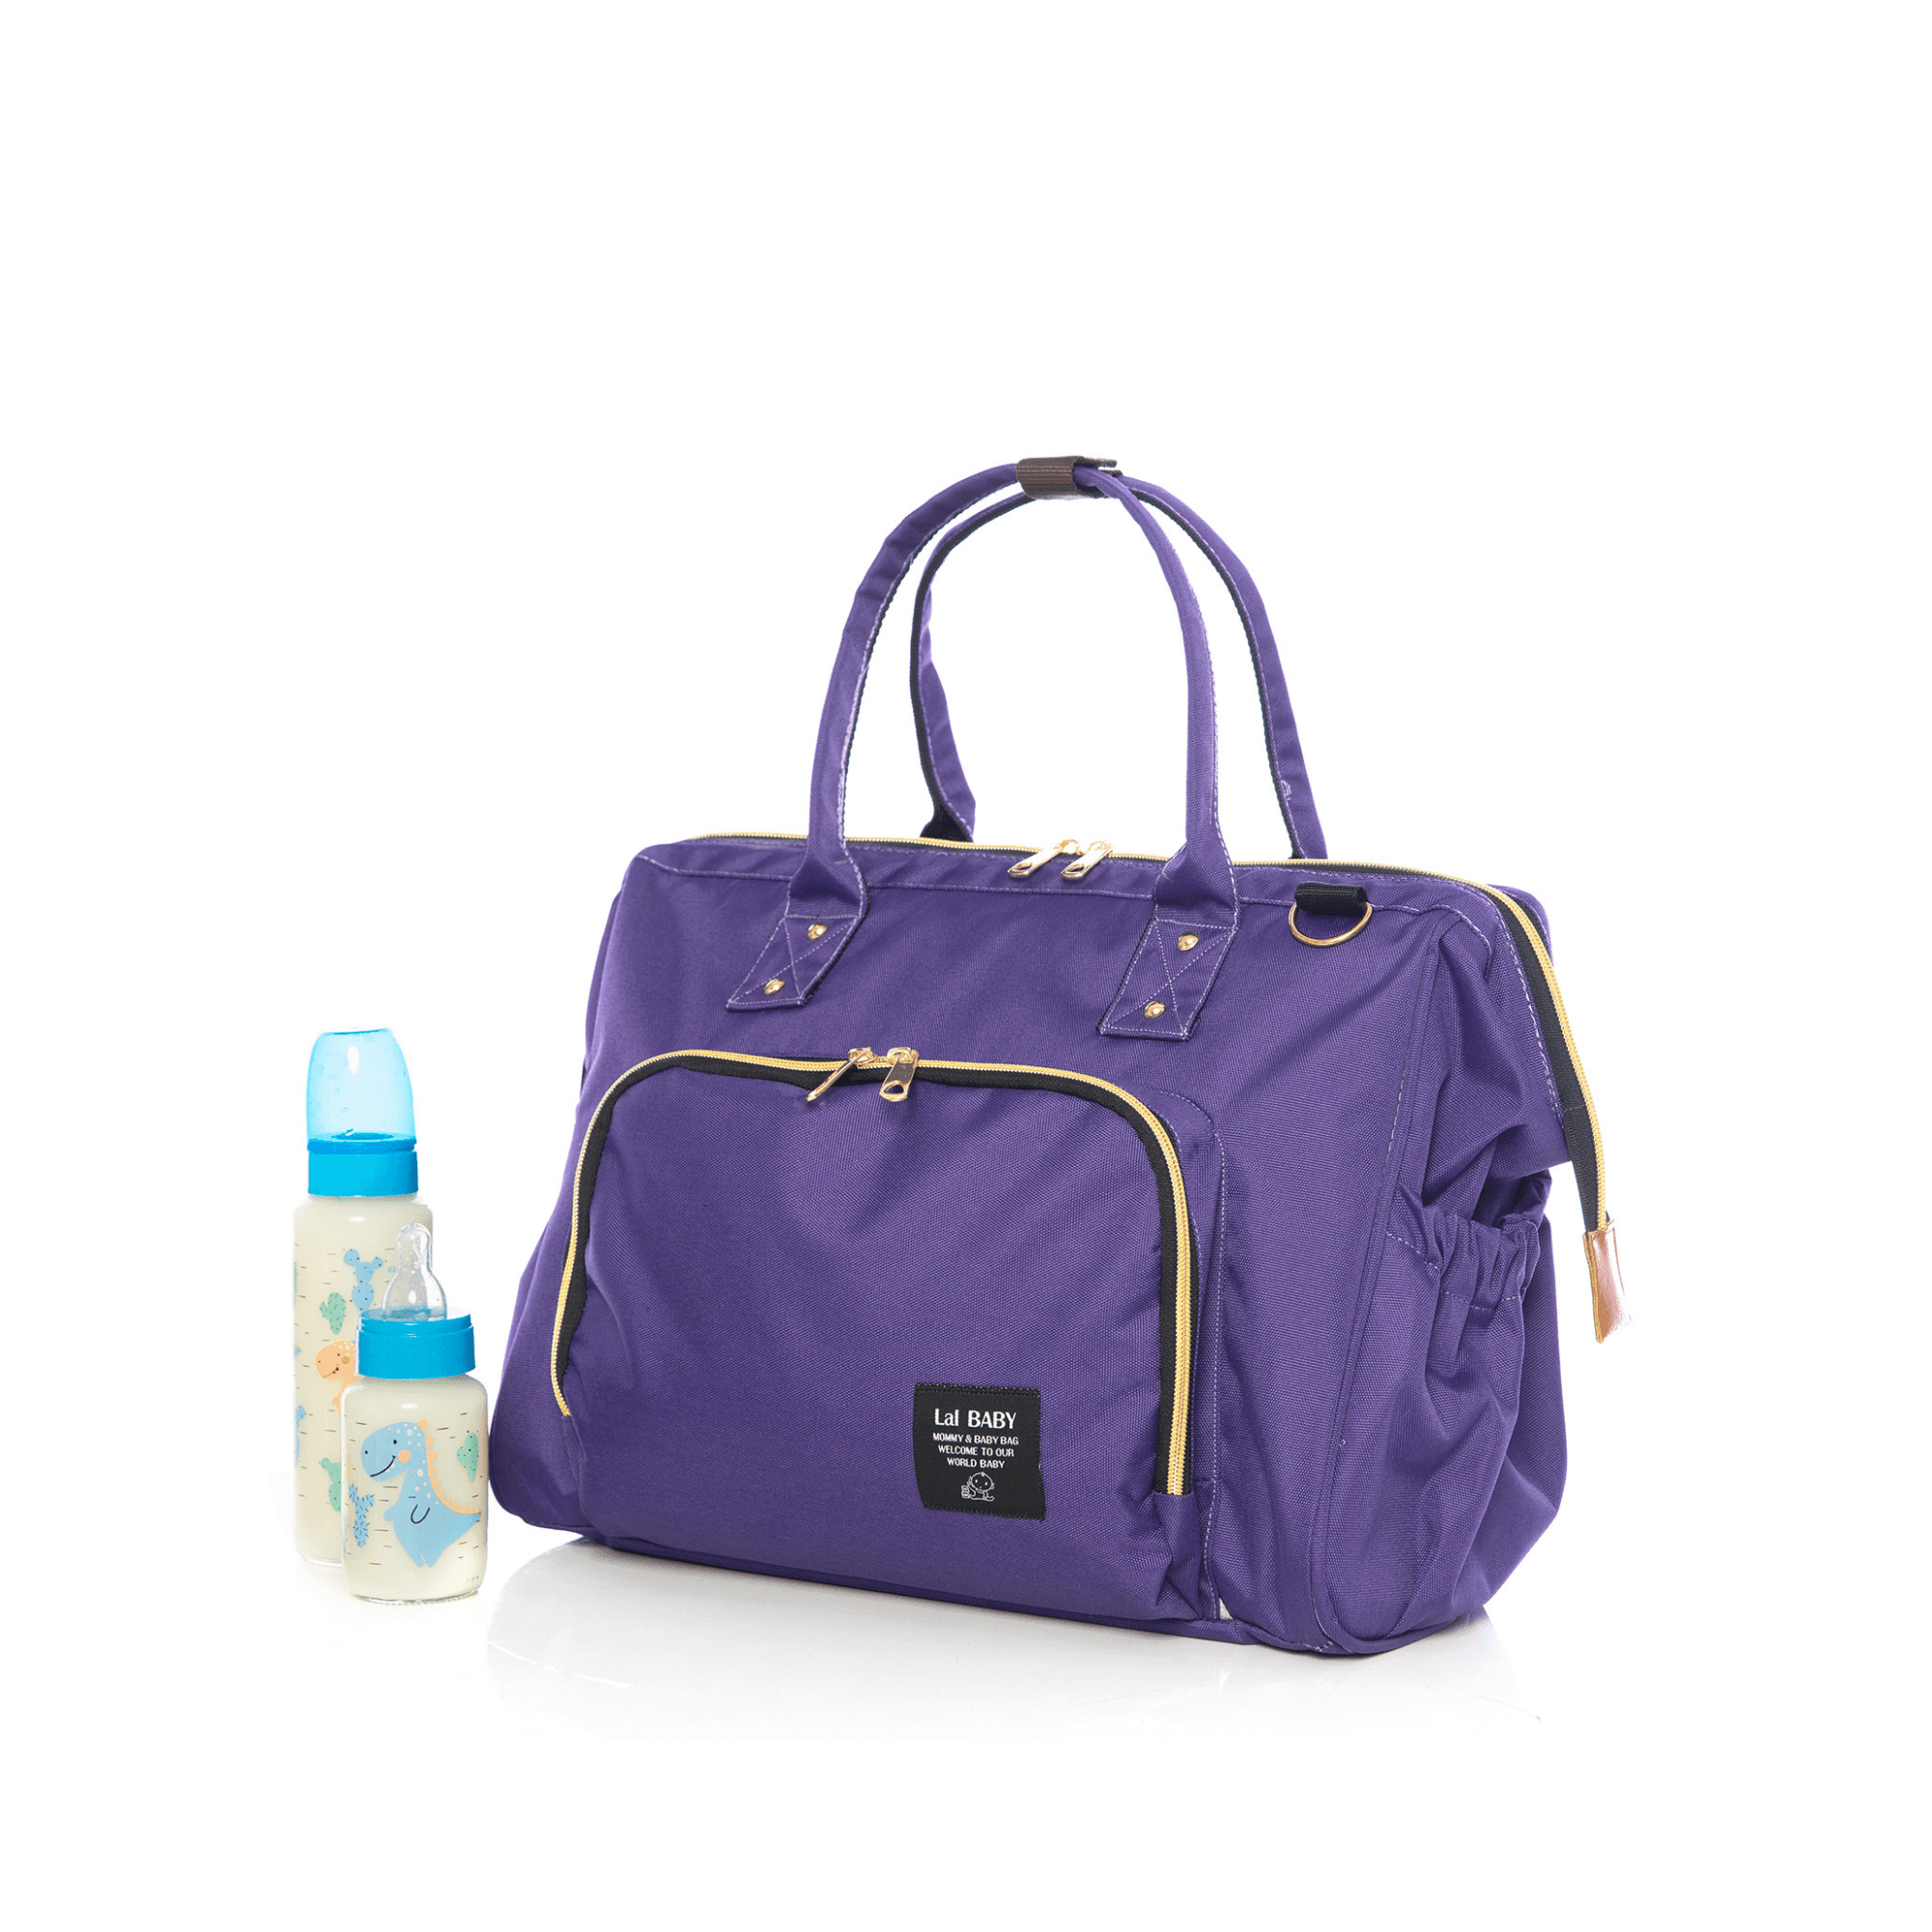 Lal Baby Baggage Bag Mor Omuz Askılı Anne Bebek Bakım Çantası